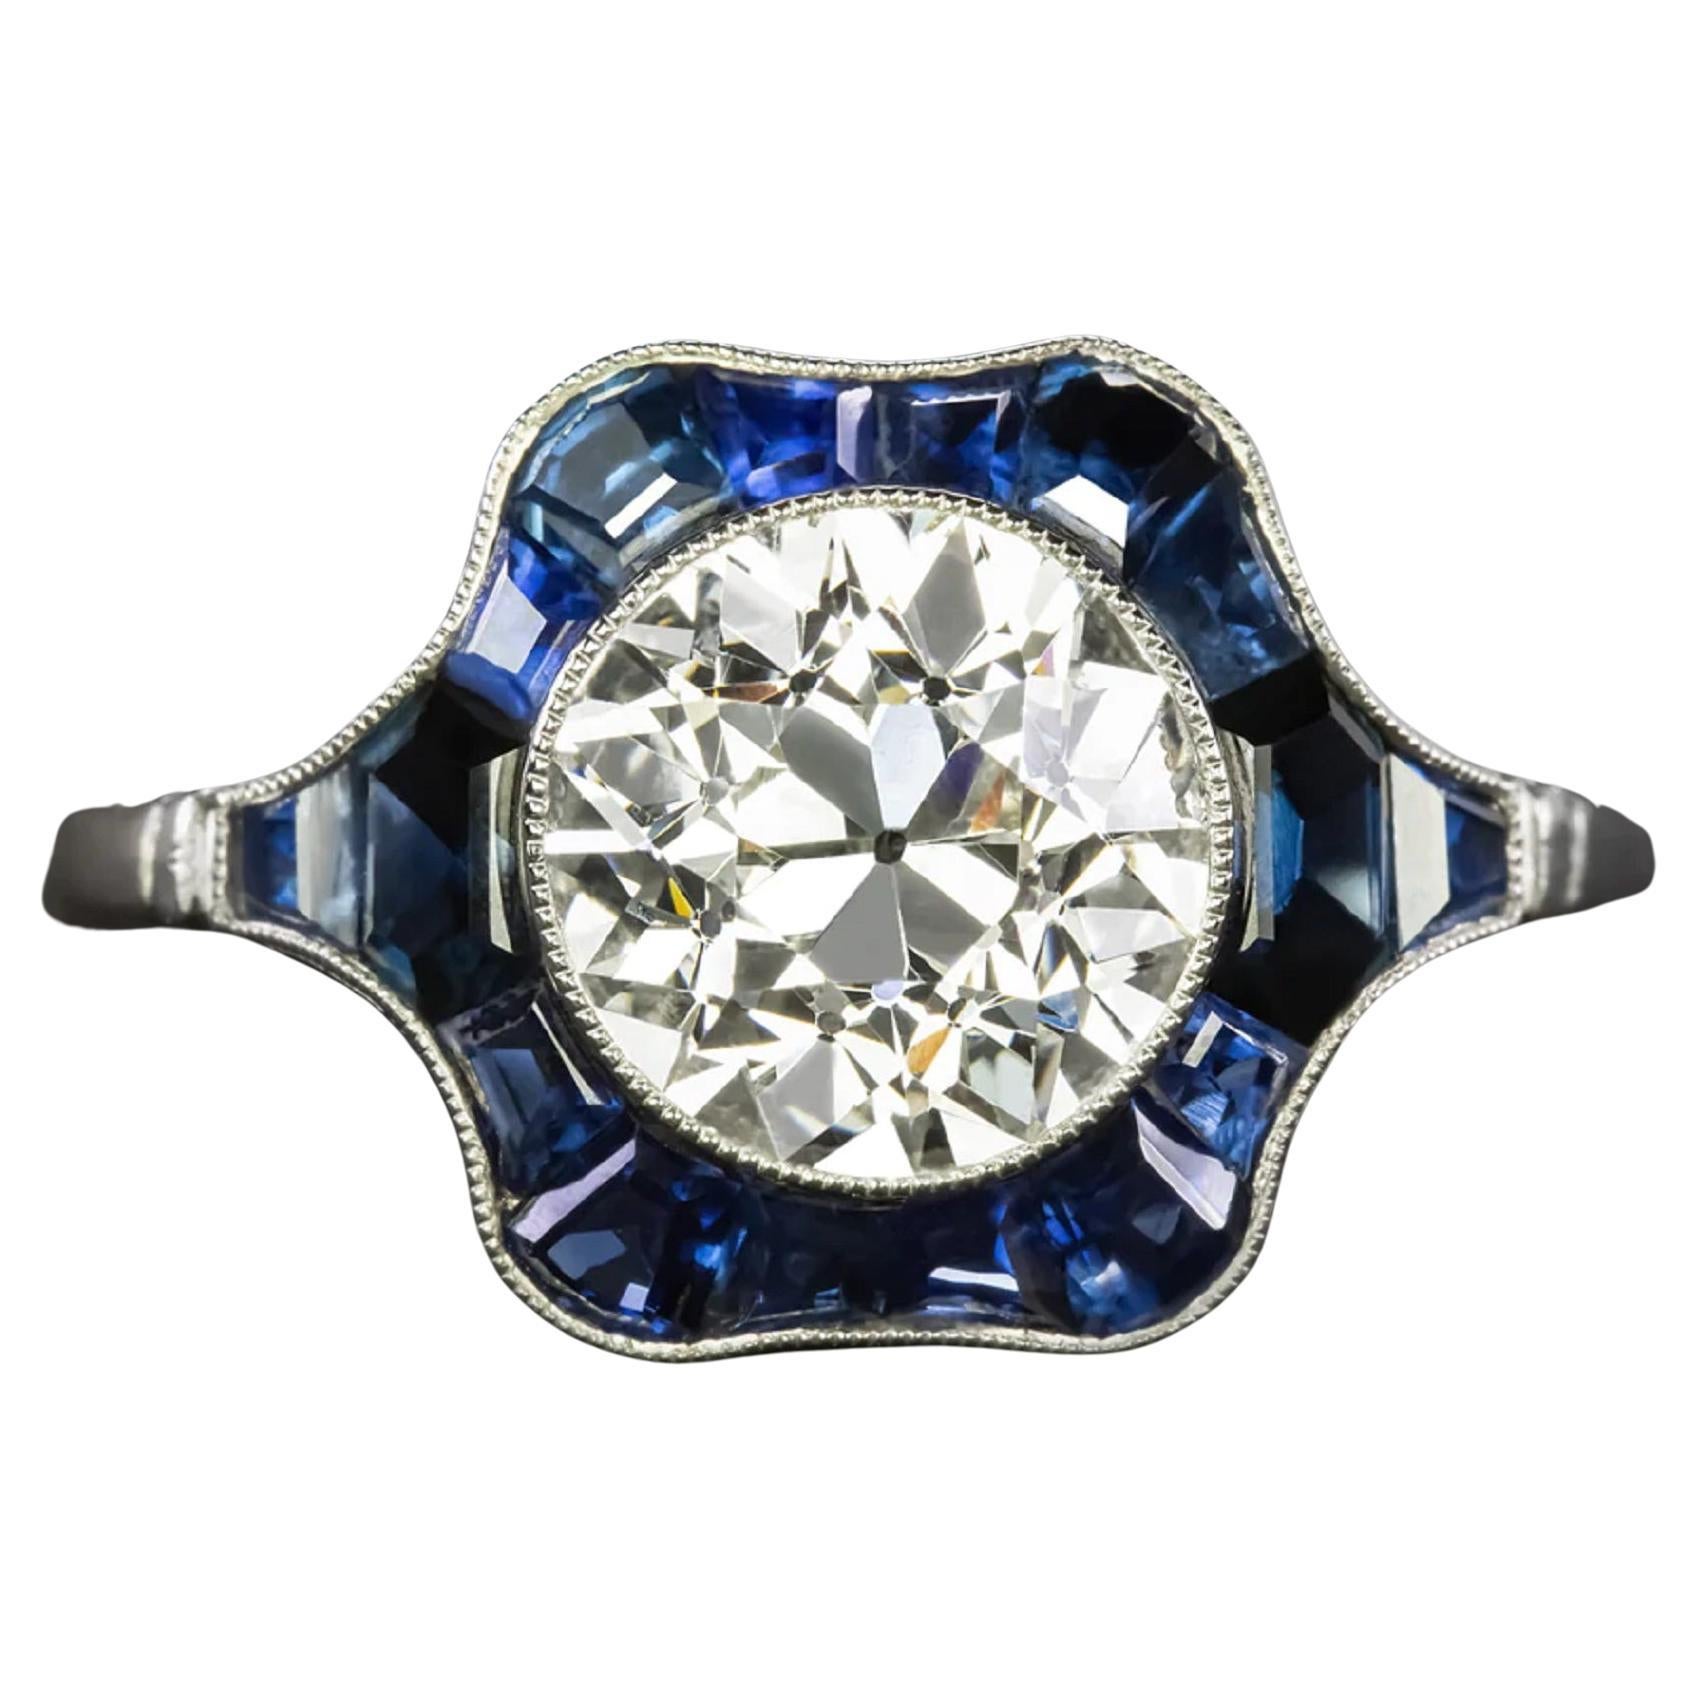 Authentique bague vintage en platine avec saphir bleu et diamant européen ancien de 2,27 carats